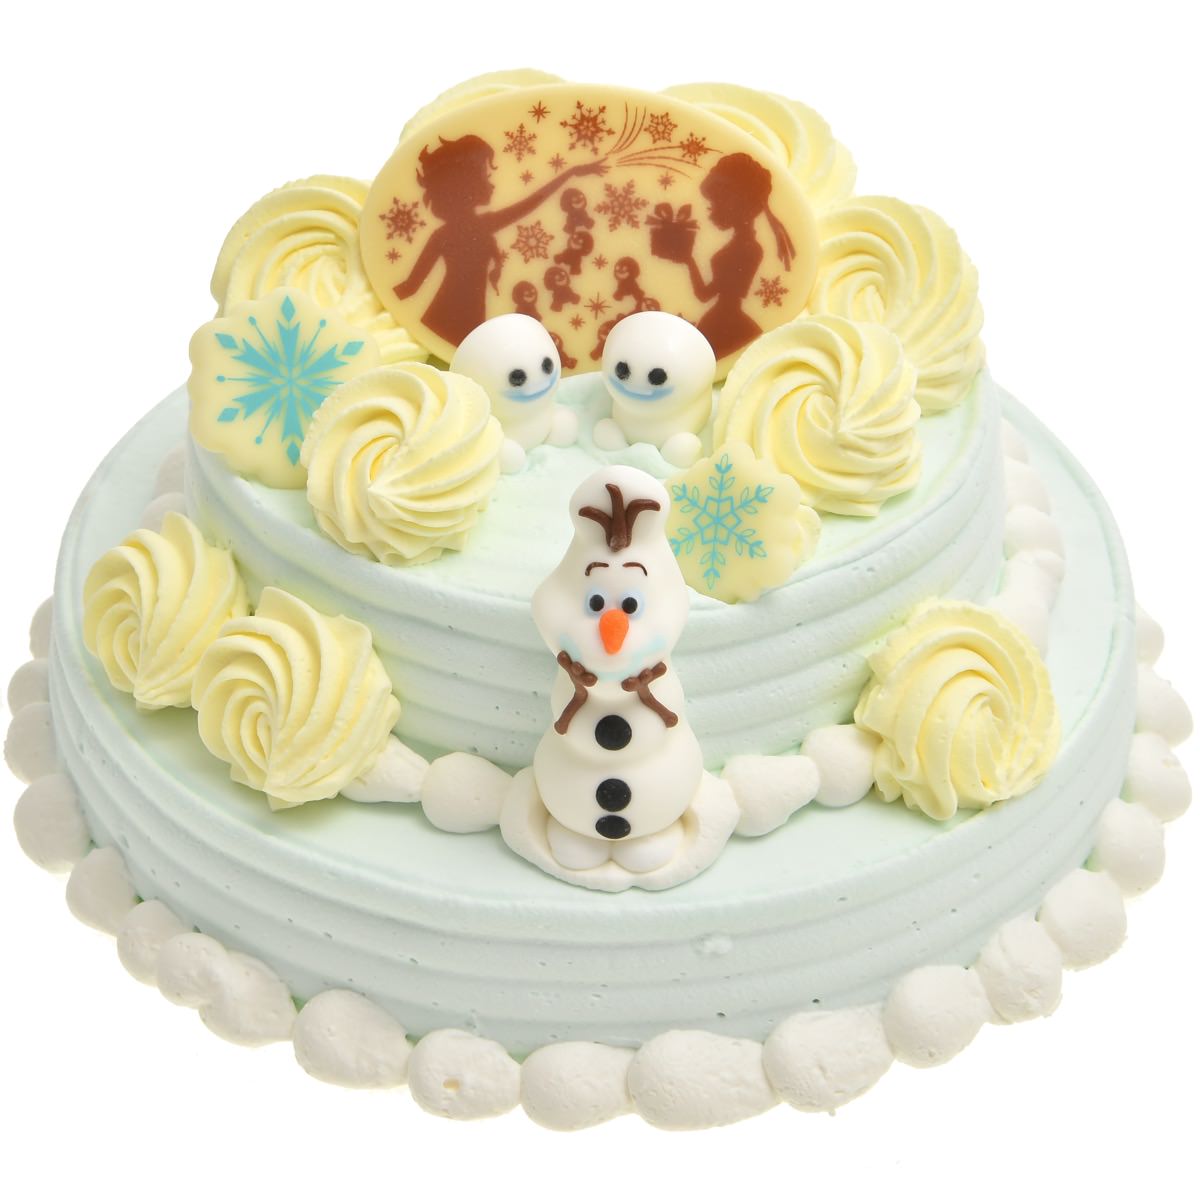 エルサのサプライズのケーキを再現 31アイスクリーム アナと雪の女王サプライズケーキ